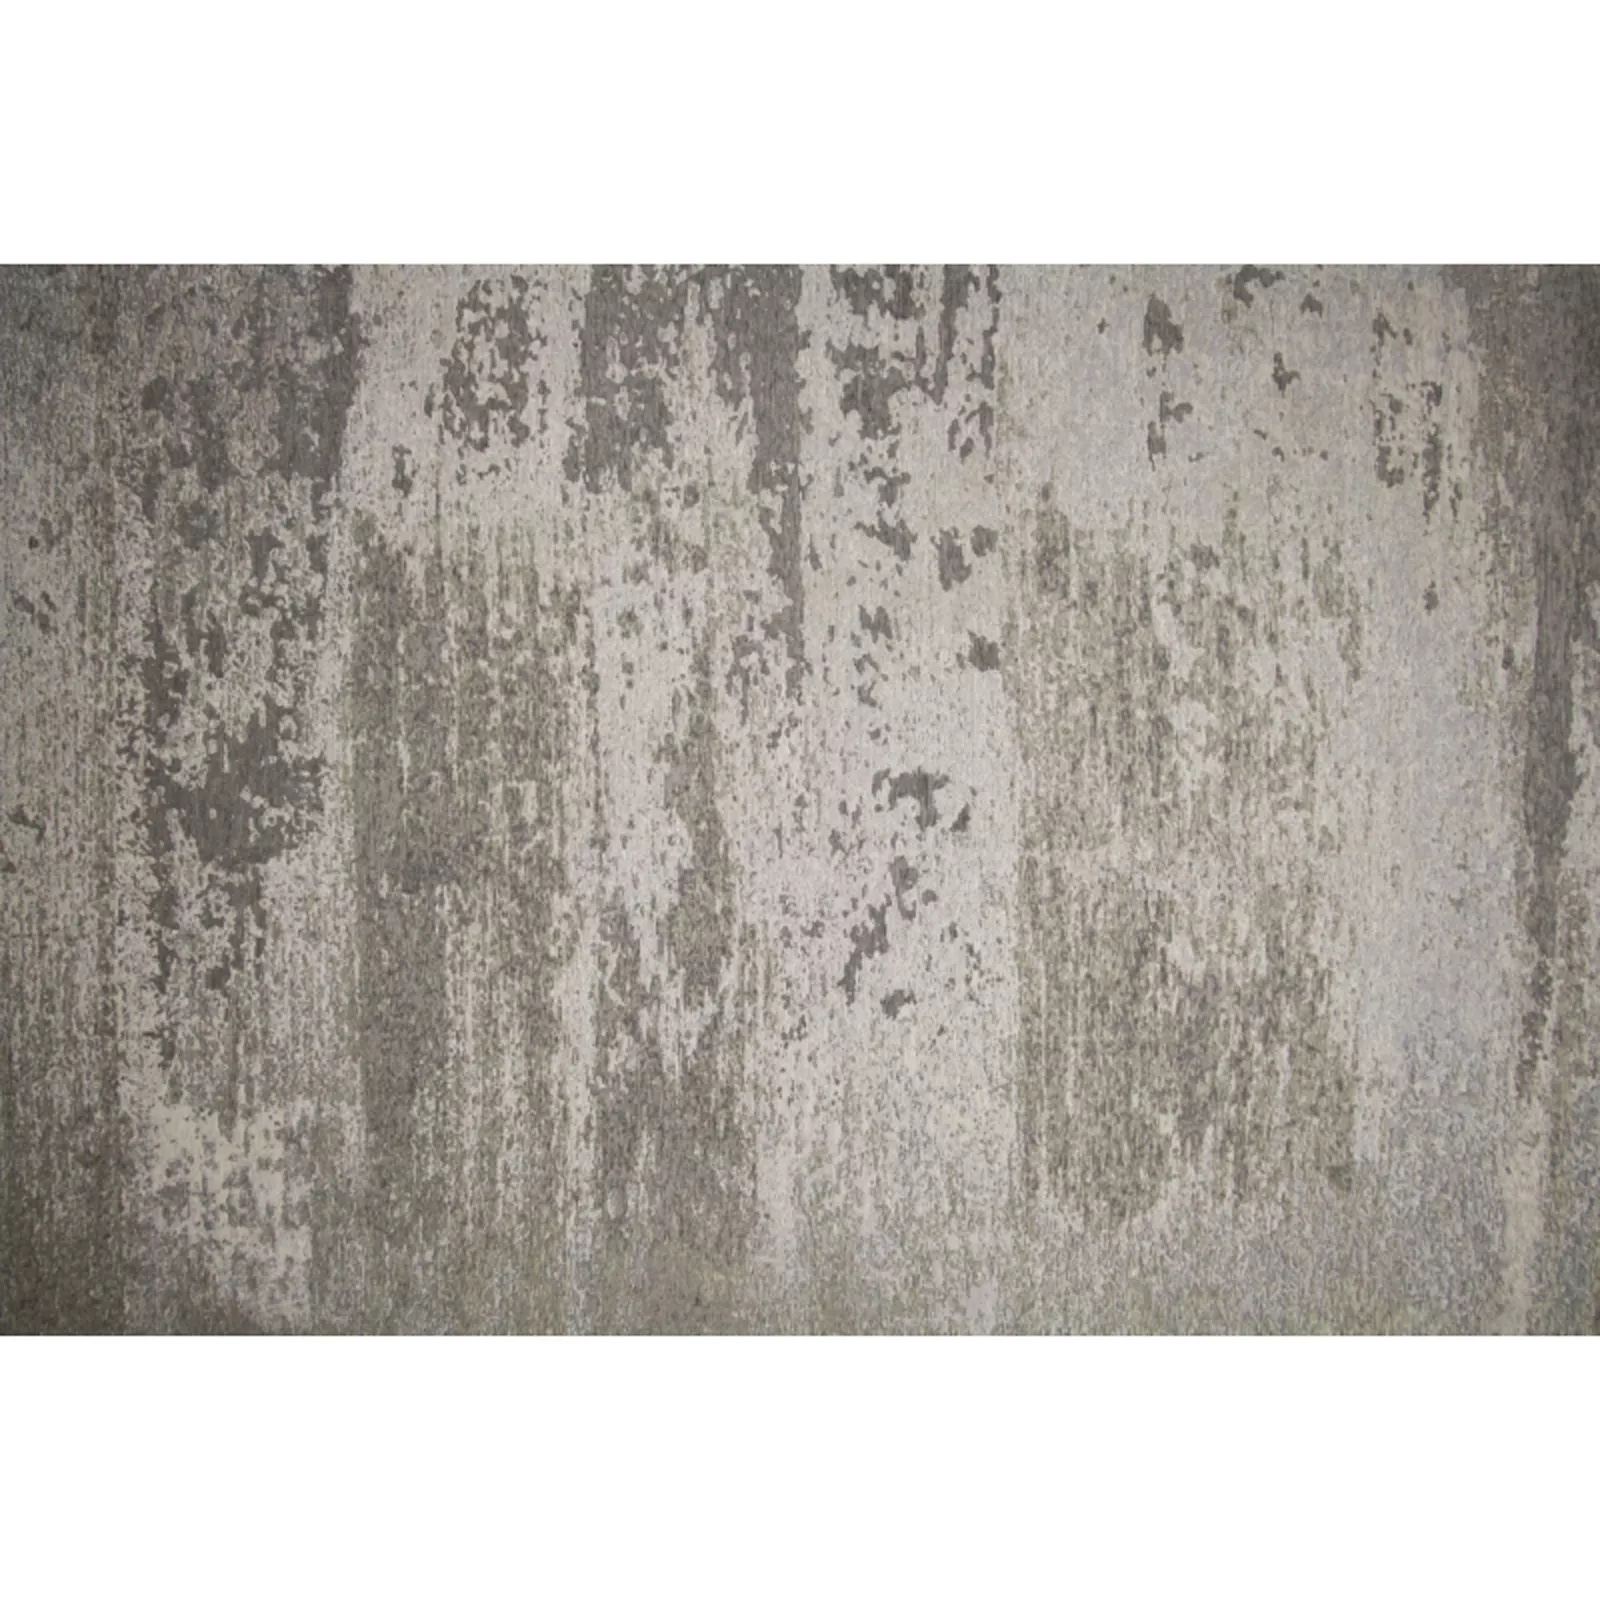 Vloerkleed (200x290cm) Cendre - Soft grey